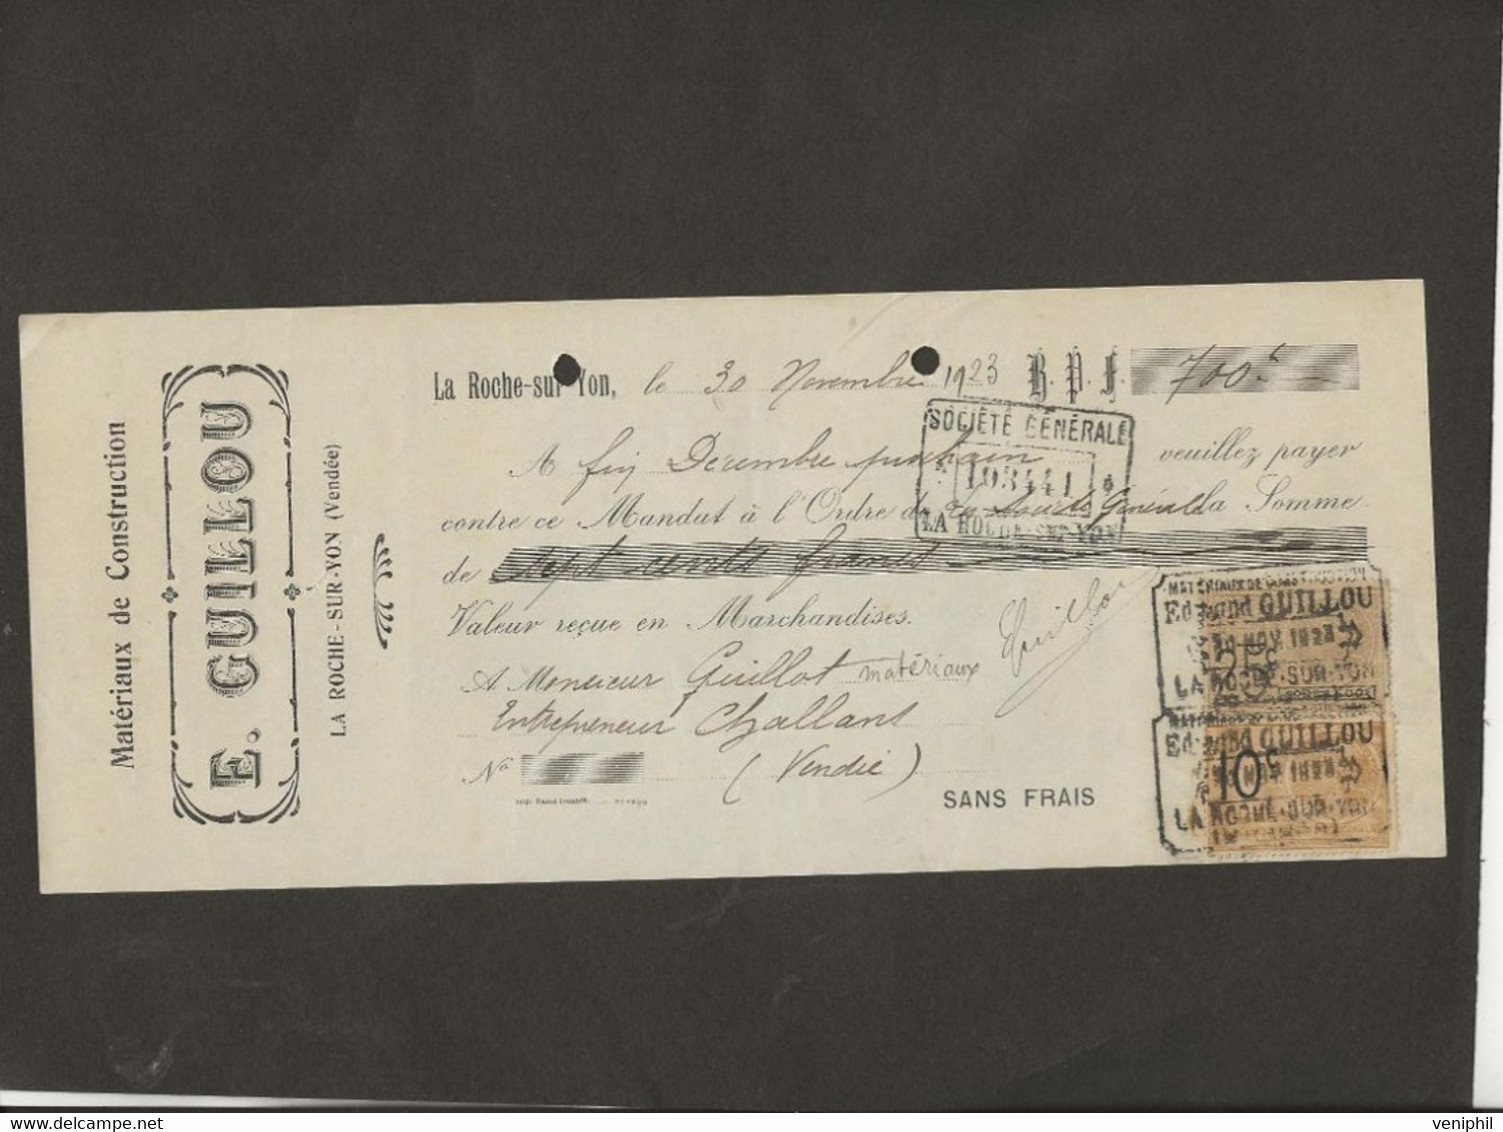 LETTRE DE CHANGE - MATERIAUX DE CONSTRUCTION -E. GUILLOU -LA ROCHE SUR YON -VENDEE -ANNEE 1923 - Bills Of Exchange